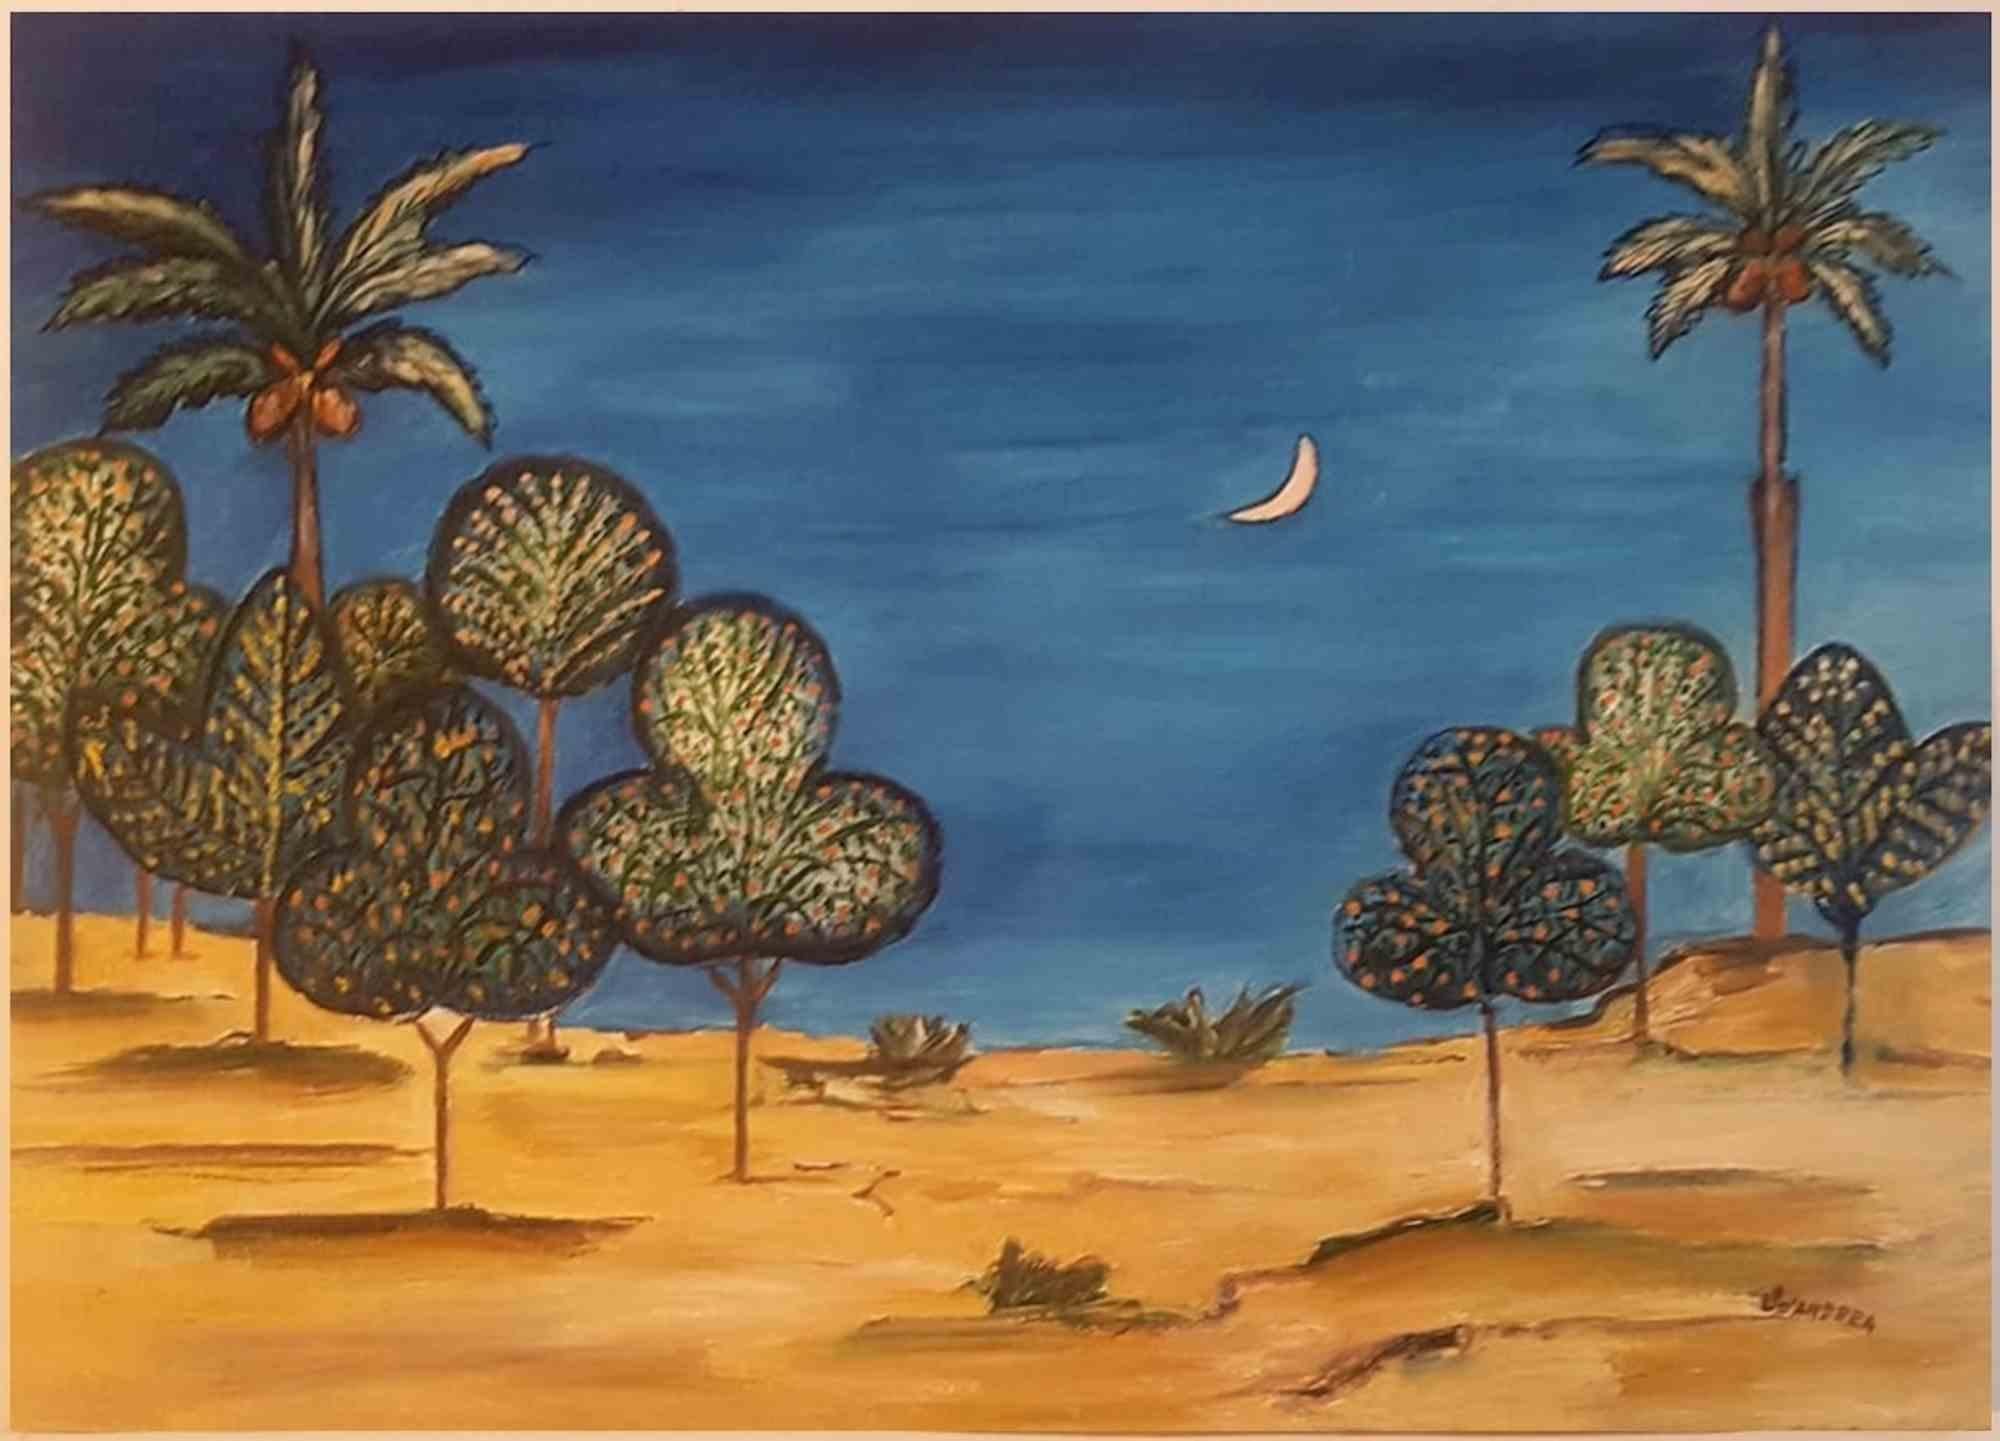 Landscape Painting Laura D'Andrea  - La nuit de Riyadh - Huile sur toile de Laura D''Andrea - 2019